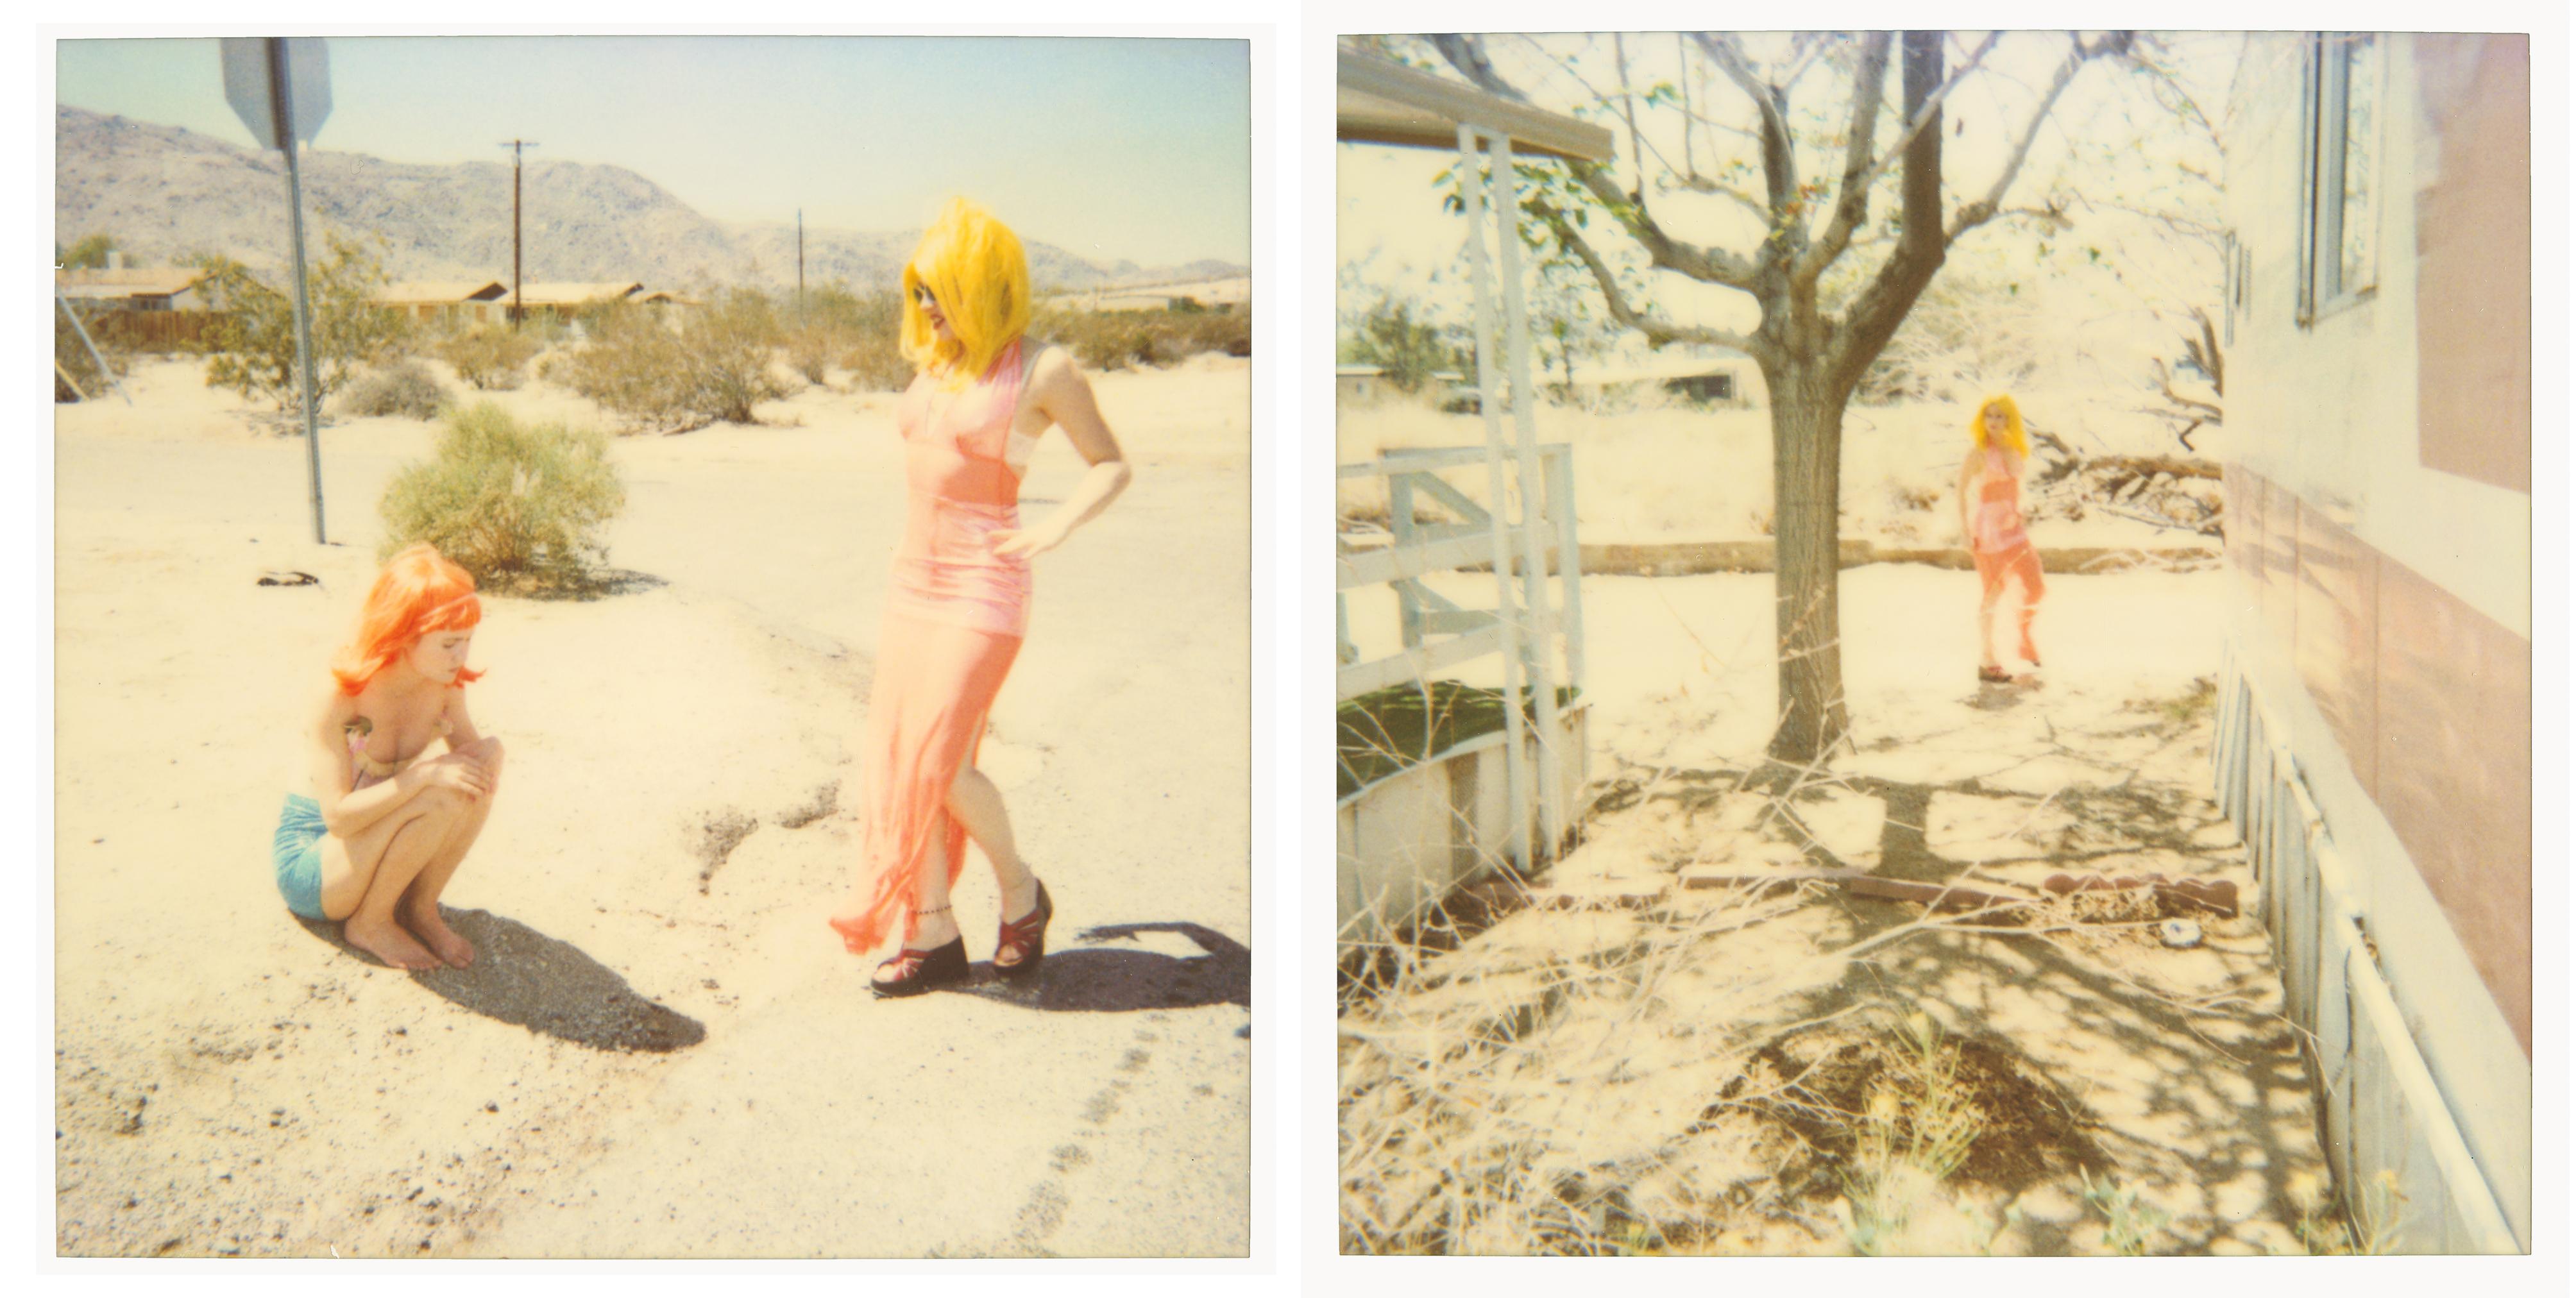 Radha und Max auf der Schotterstraße (29 Palms, CA) - je 20x20cm, Polaroid, Contemporary